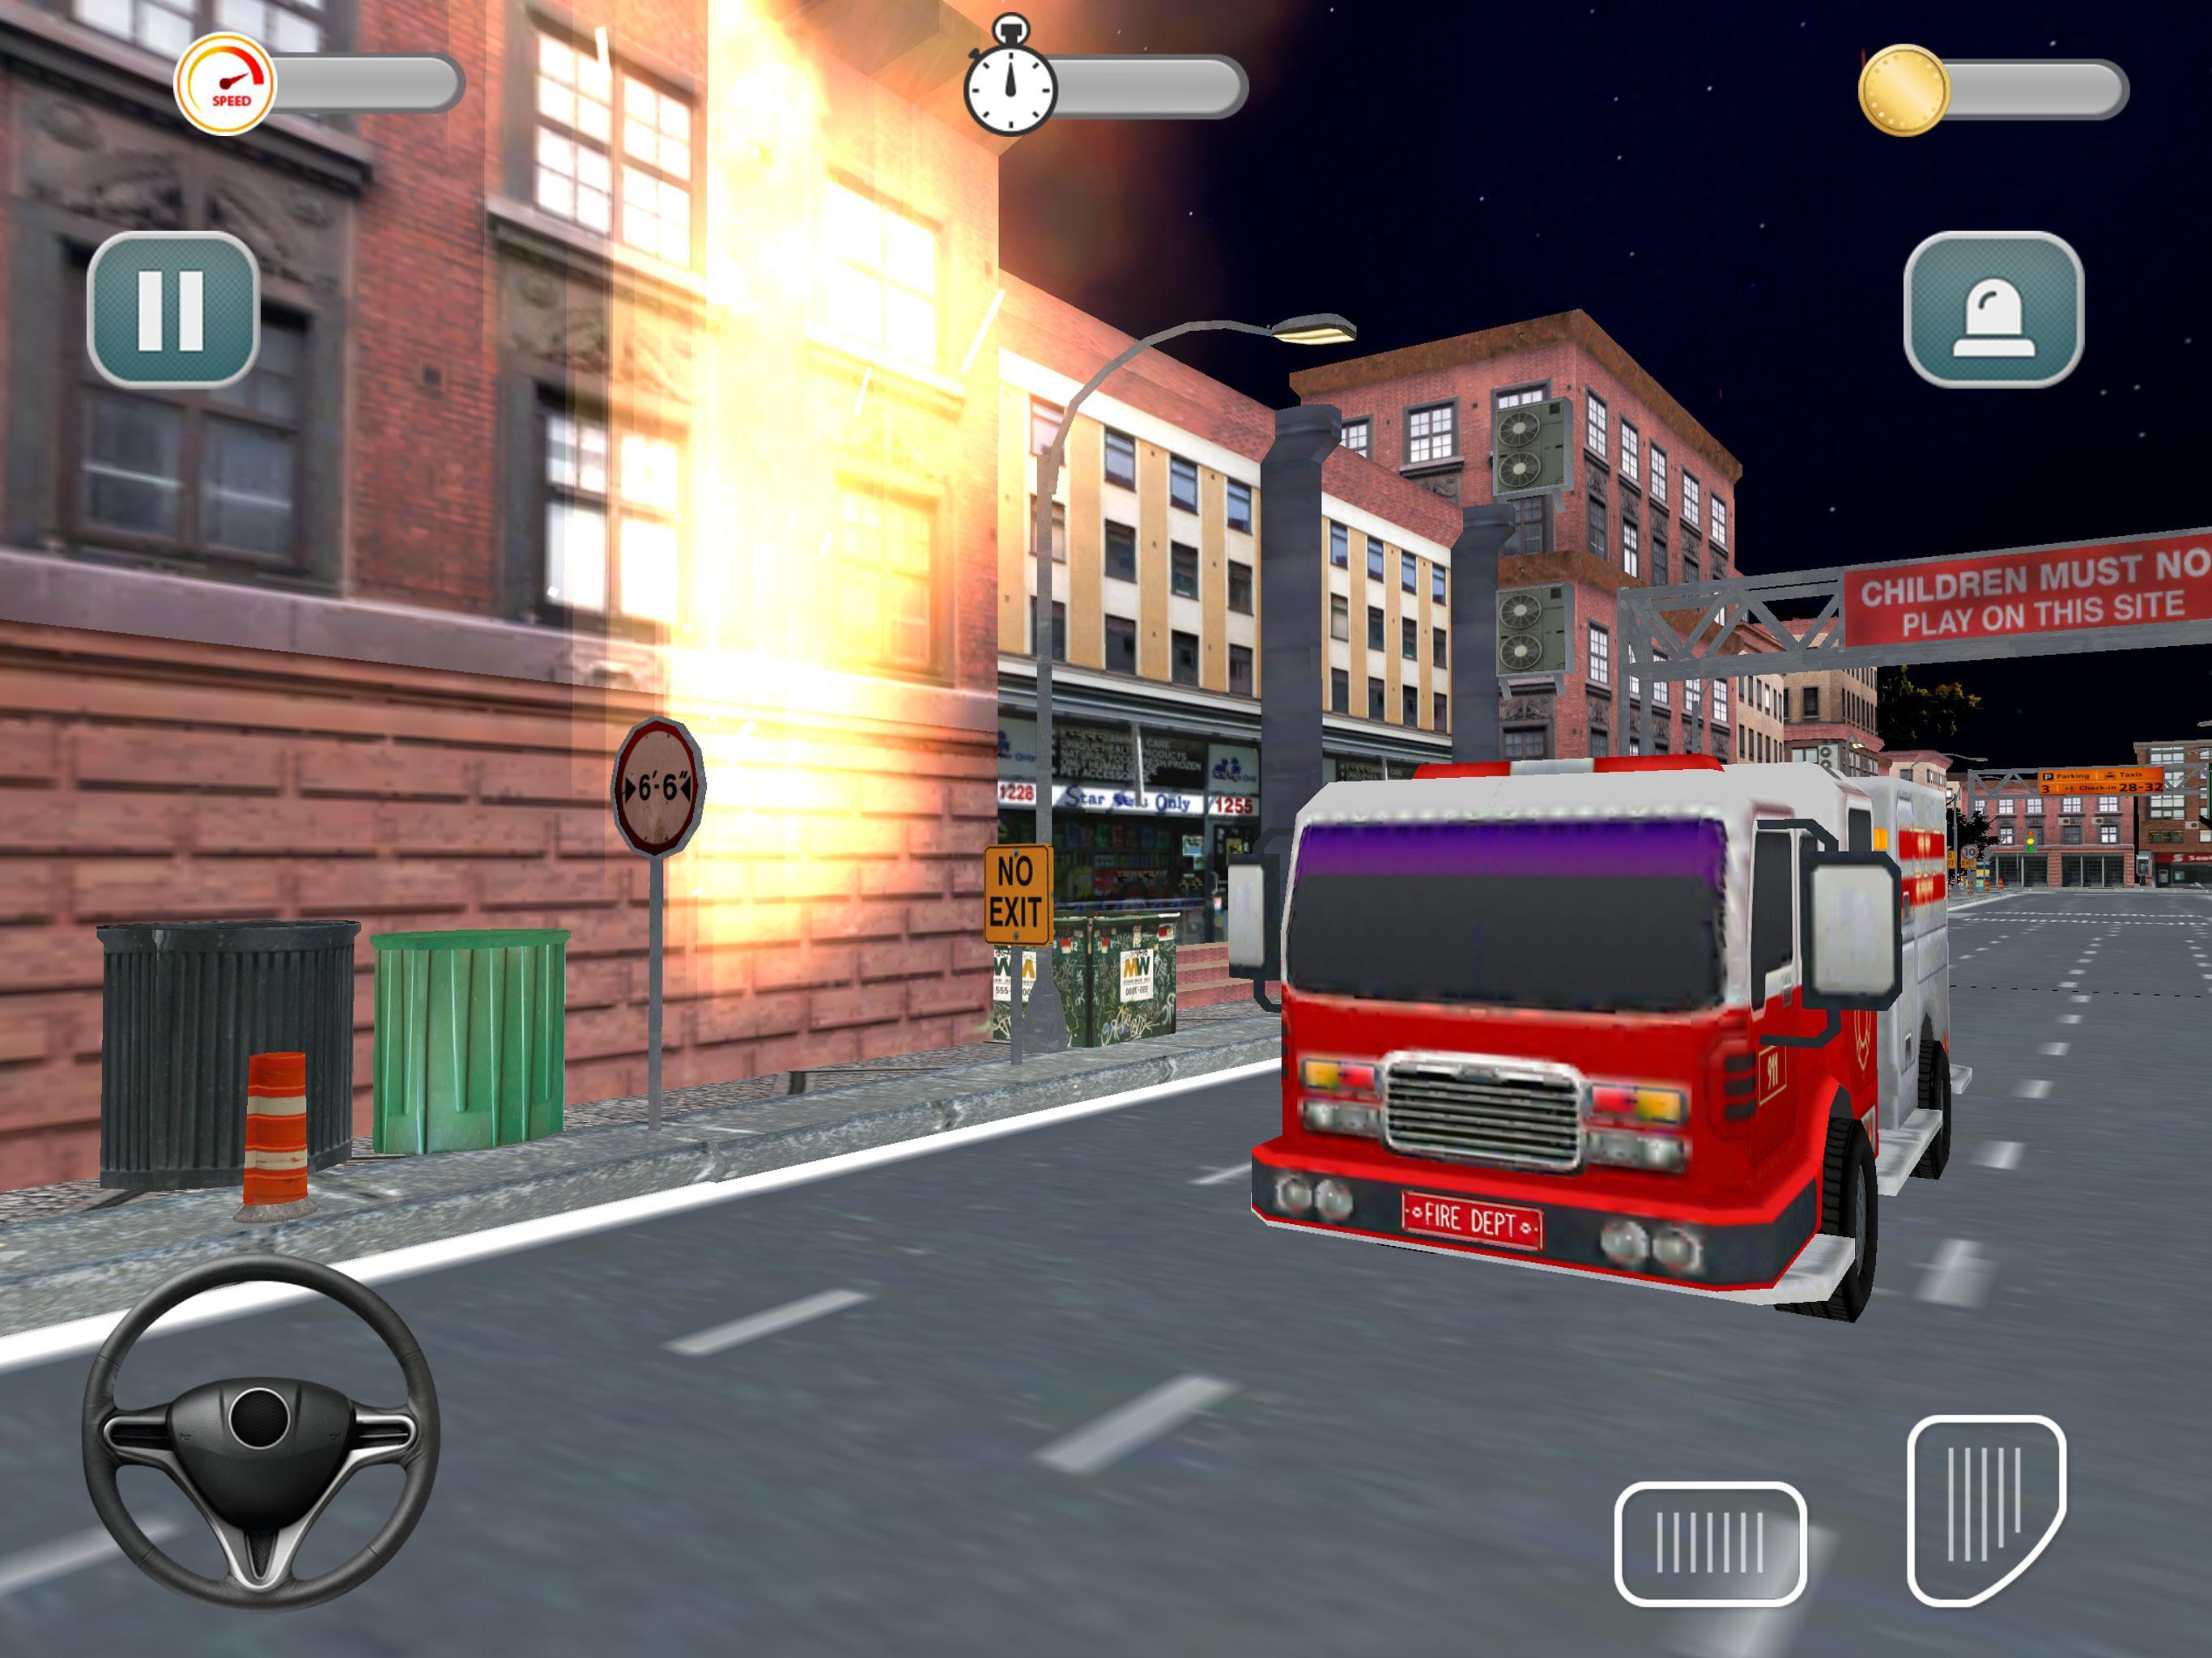 Симулятор 911. Пожарная машина симулятор вождения. Симулятор пожарной машины на андроид. Игра пожарная машина для взрослых. Симулятор пожарной машины